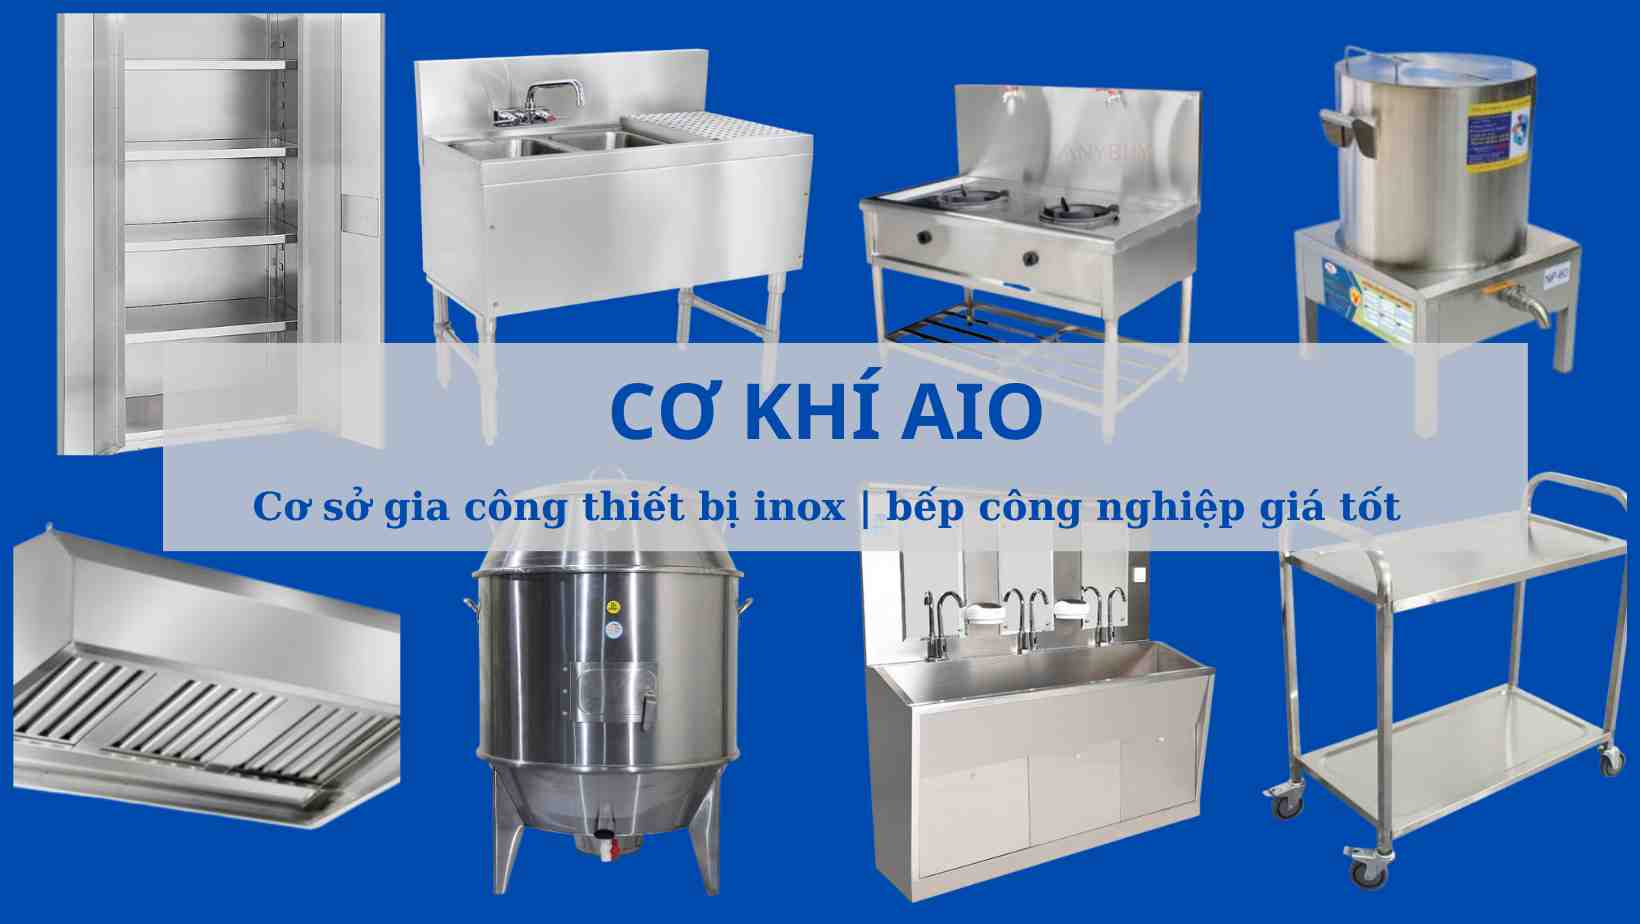 ✅ Thiết kế lắp đặt bếp inox công nghiệp AIO, ⚡ Cửa hàng làm tư vấ́n lắp đặt thiết bị bếp Quảng Nam 